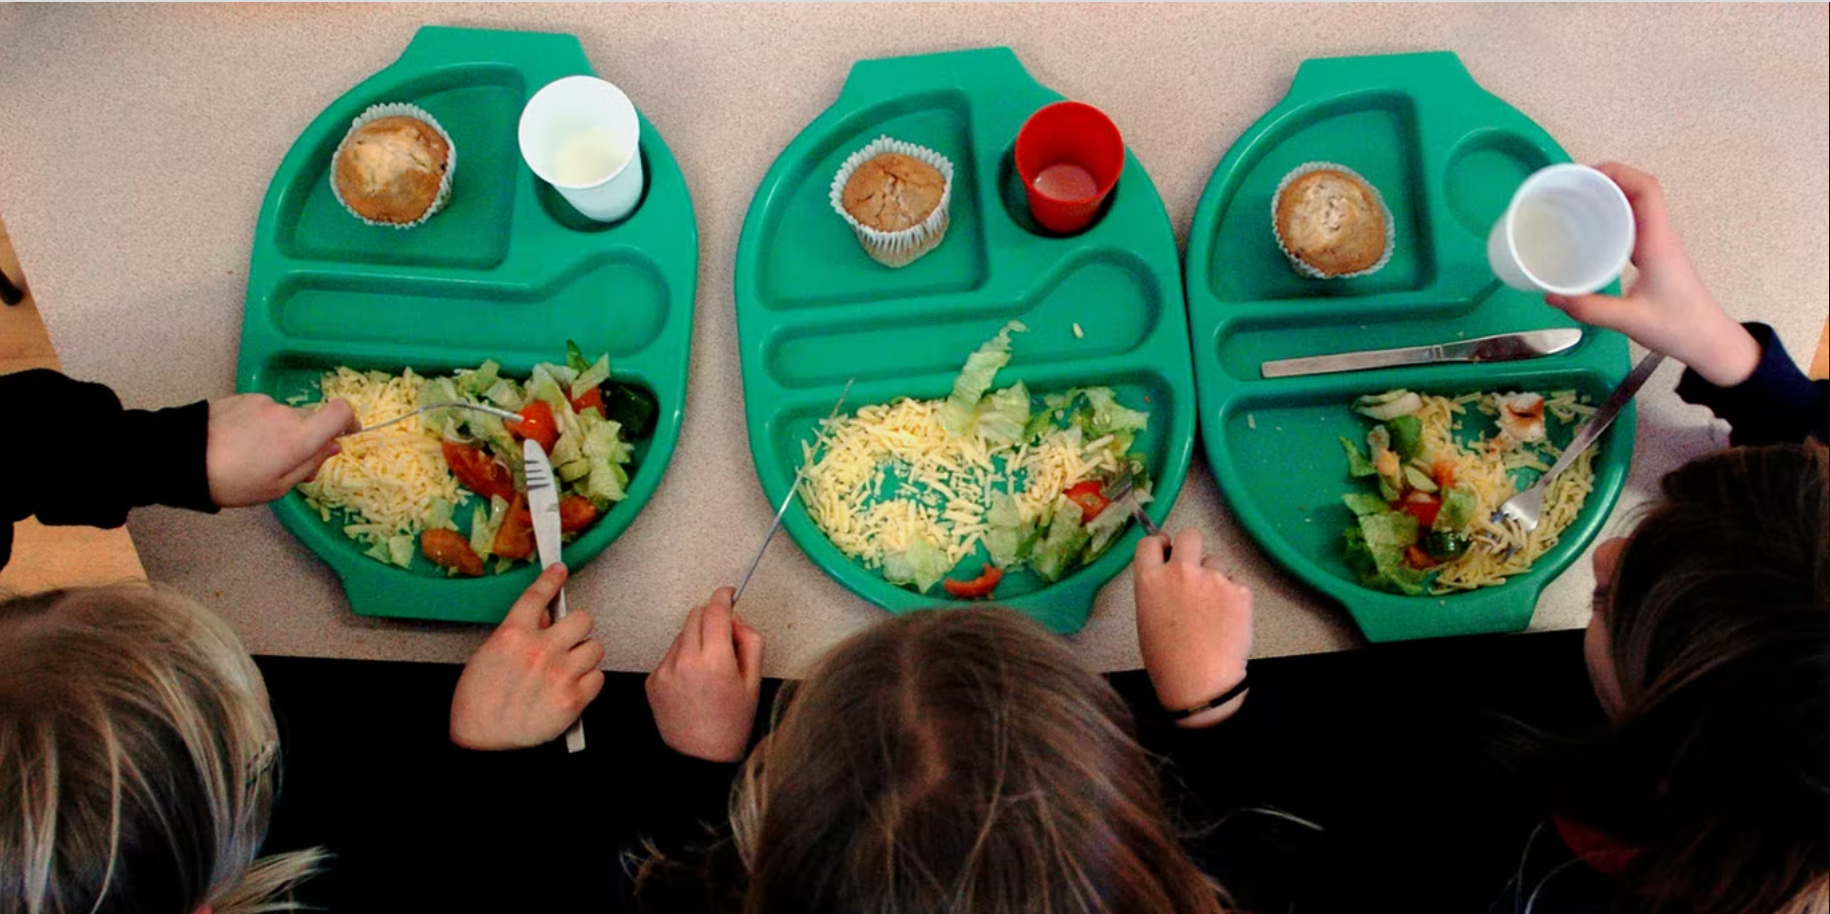 Chi phí gia tăng, bữa ăn ở trường của học sinh Anh giảm cả chất lẫn lượng